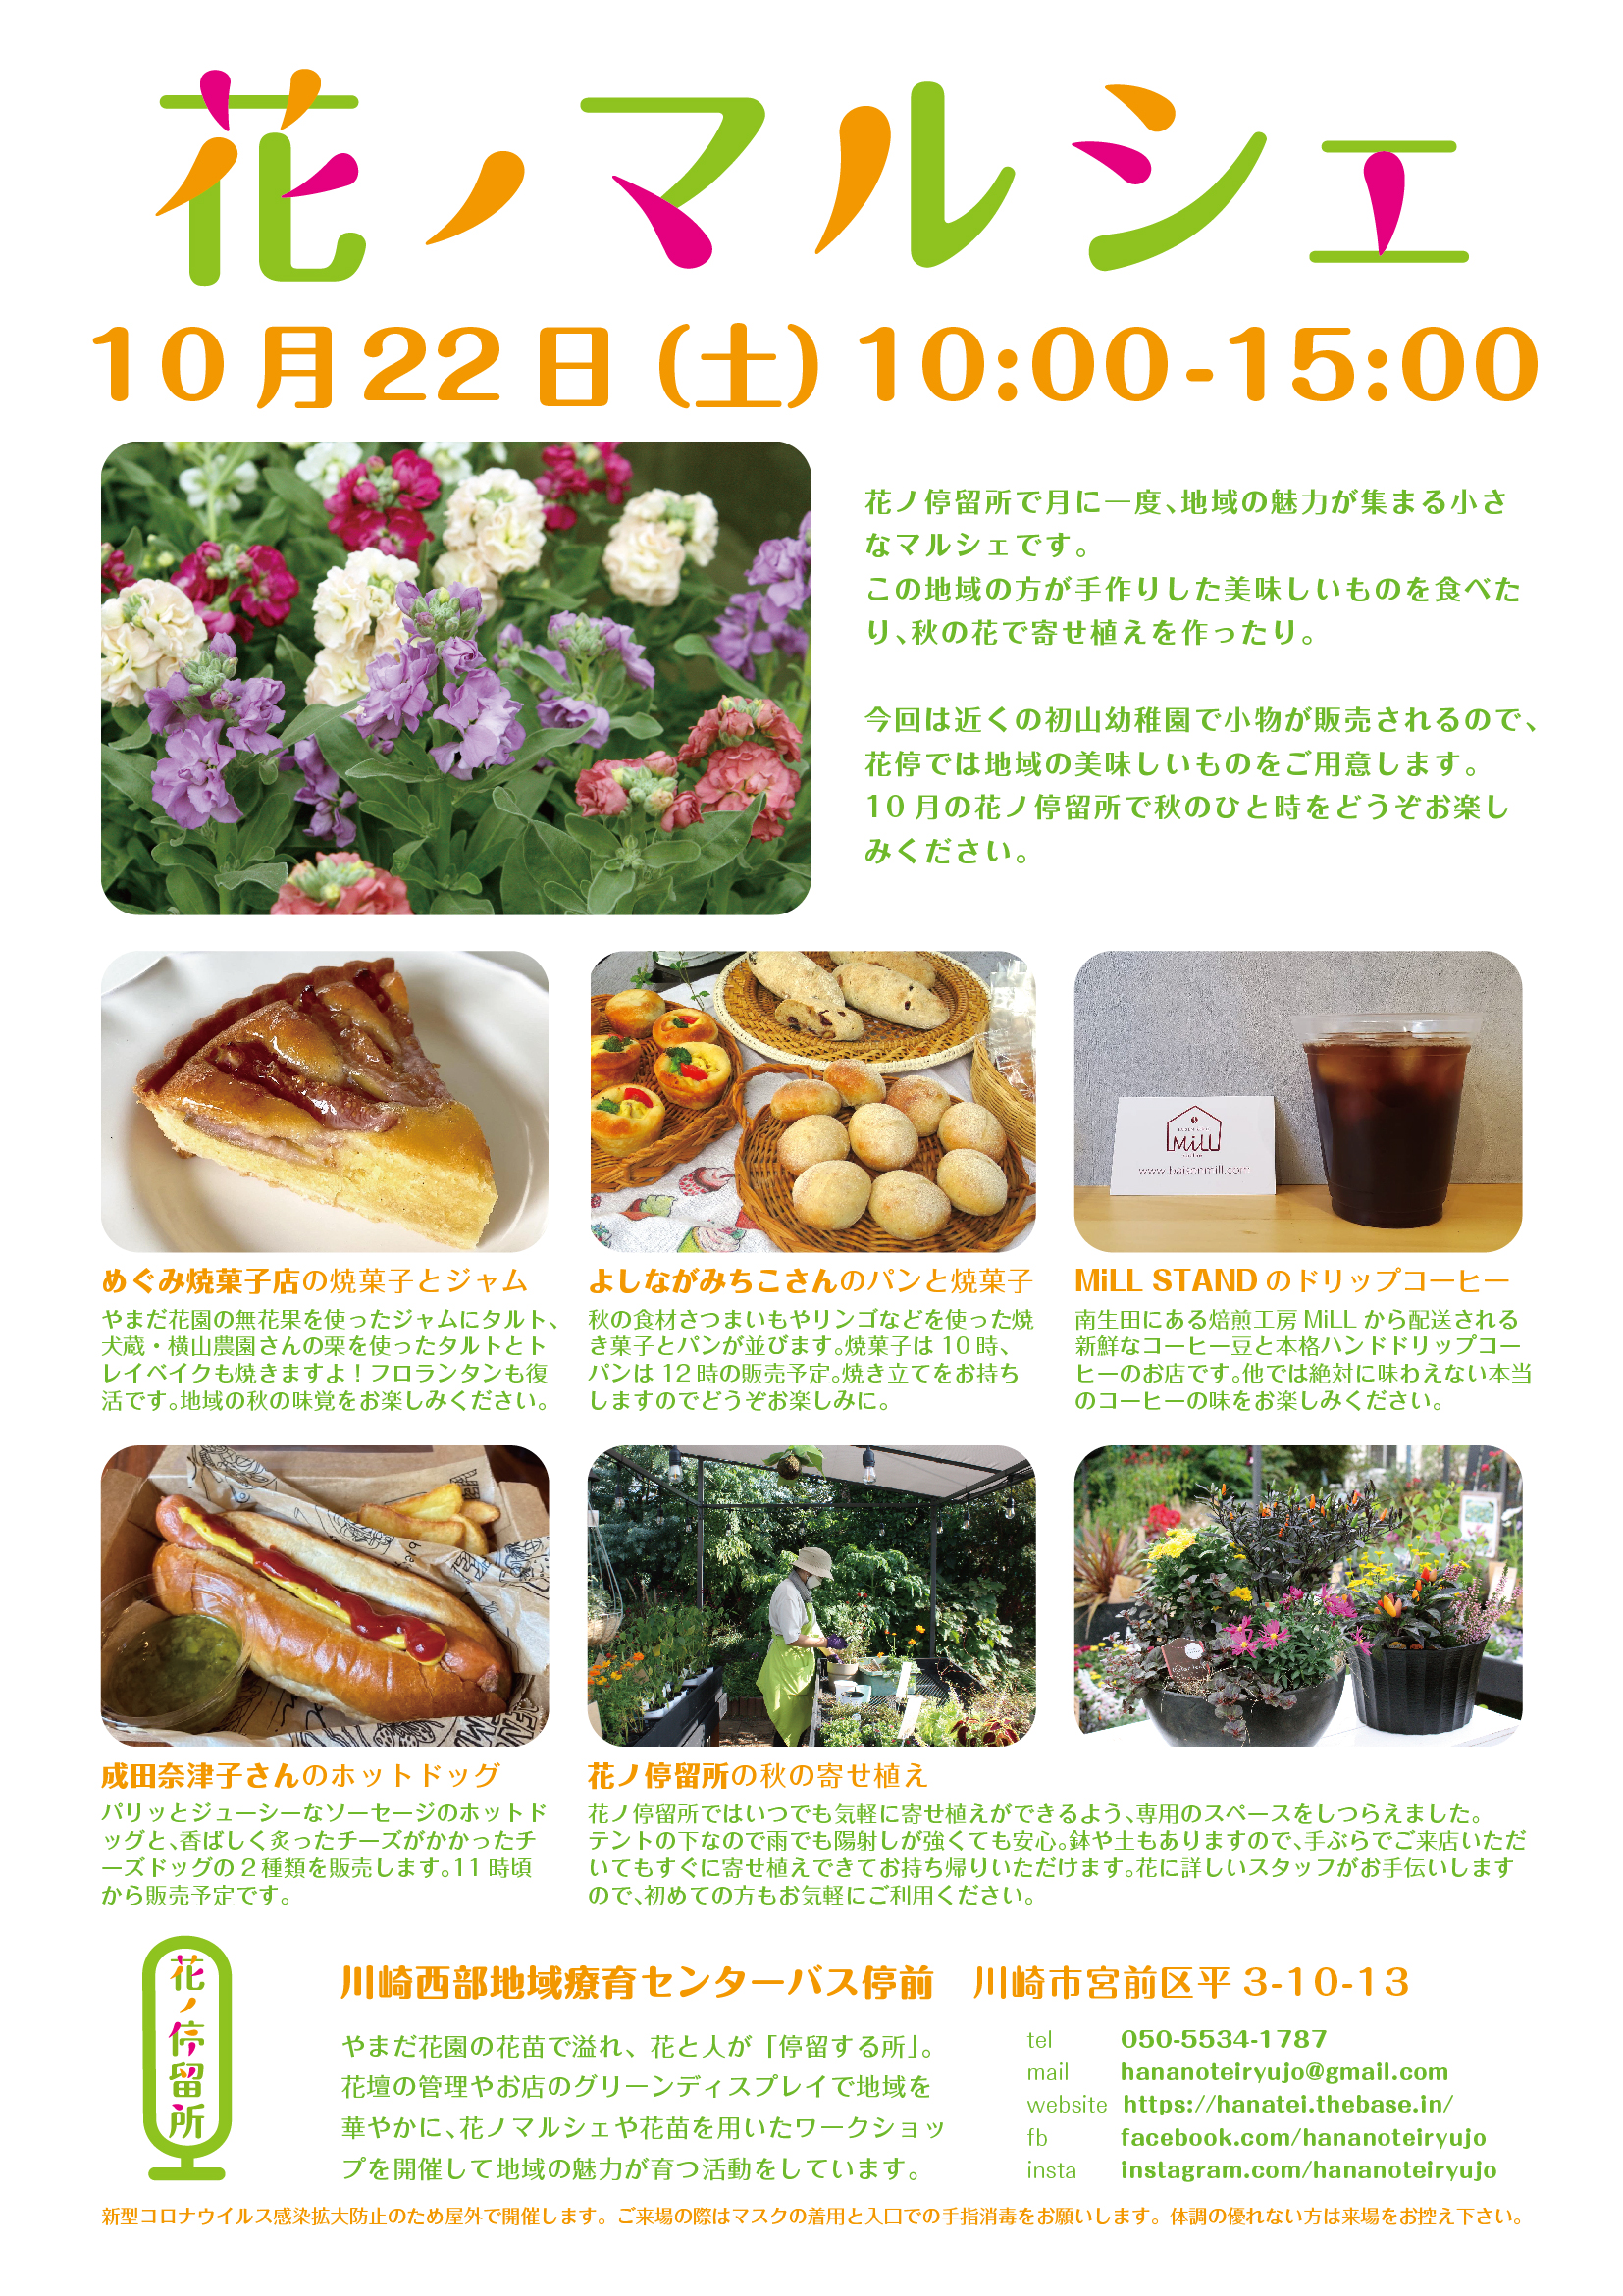 10 22開催 花ノマルシェ 花ノ停留所 のご案内 めぐみ焼菓子店